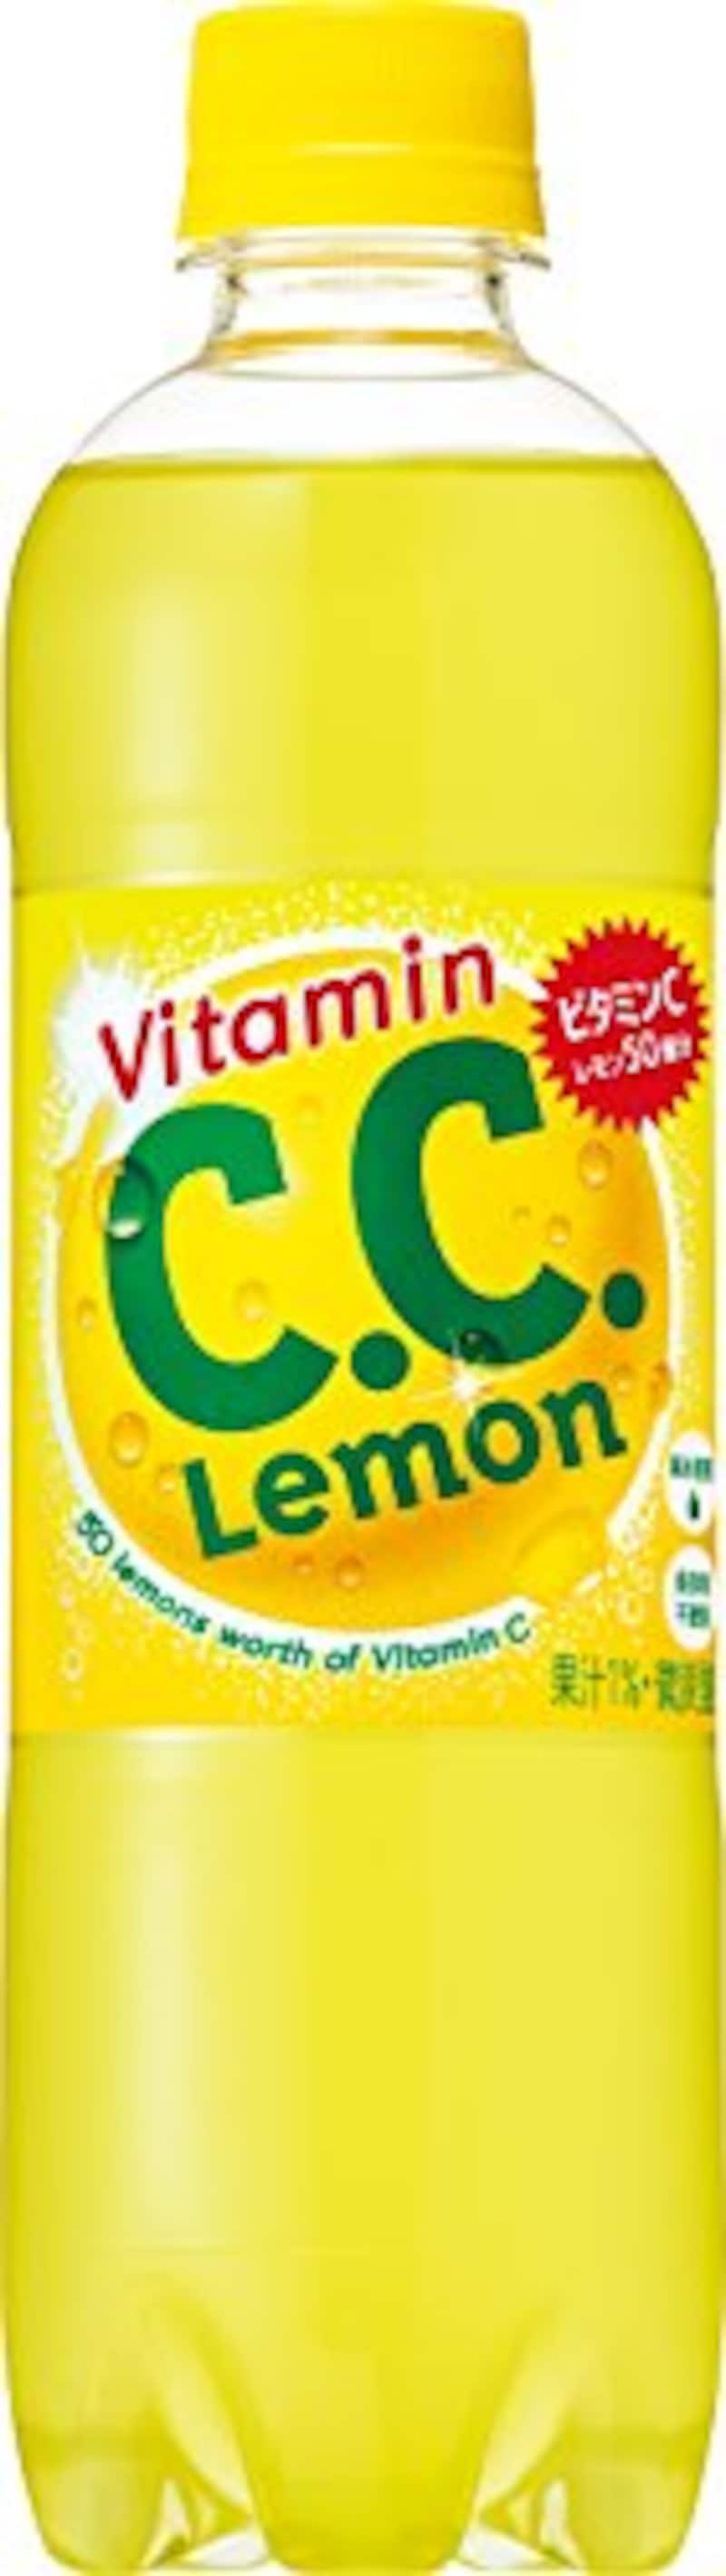 C.C.レモン500ml×24本